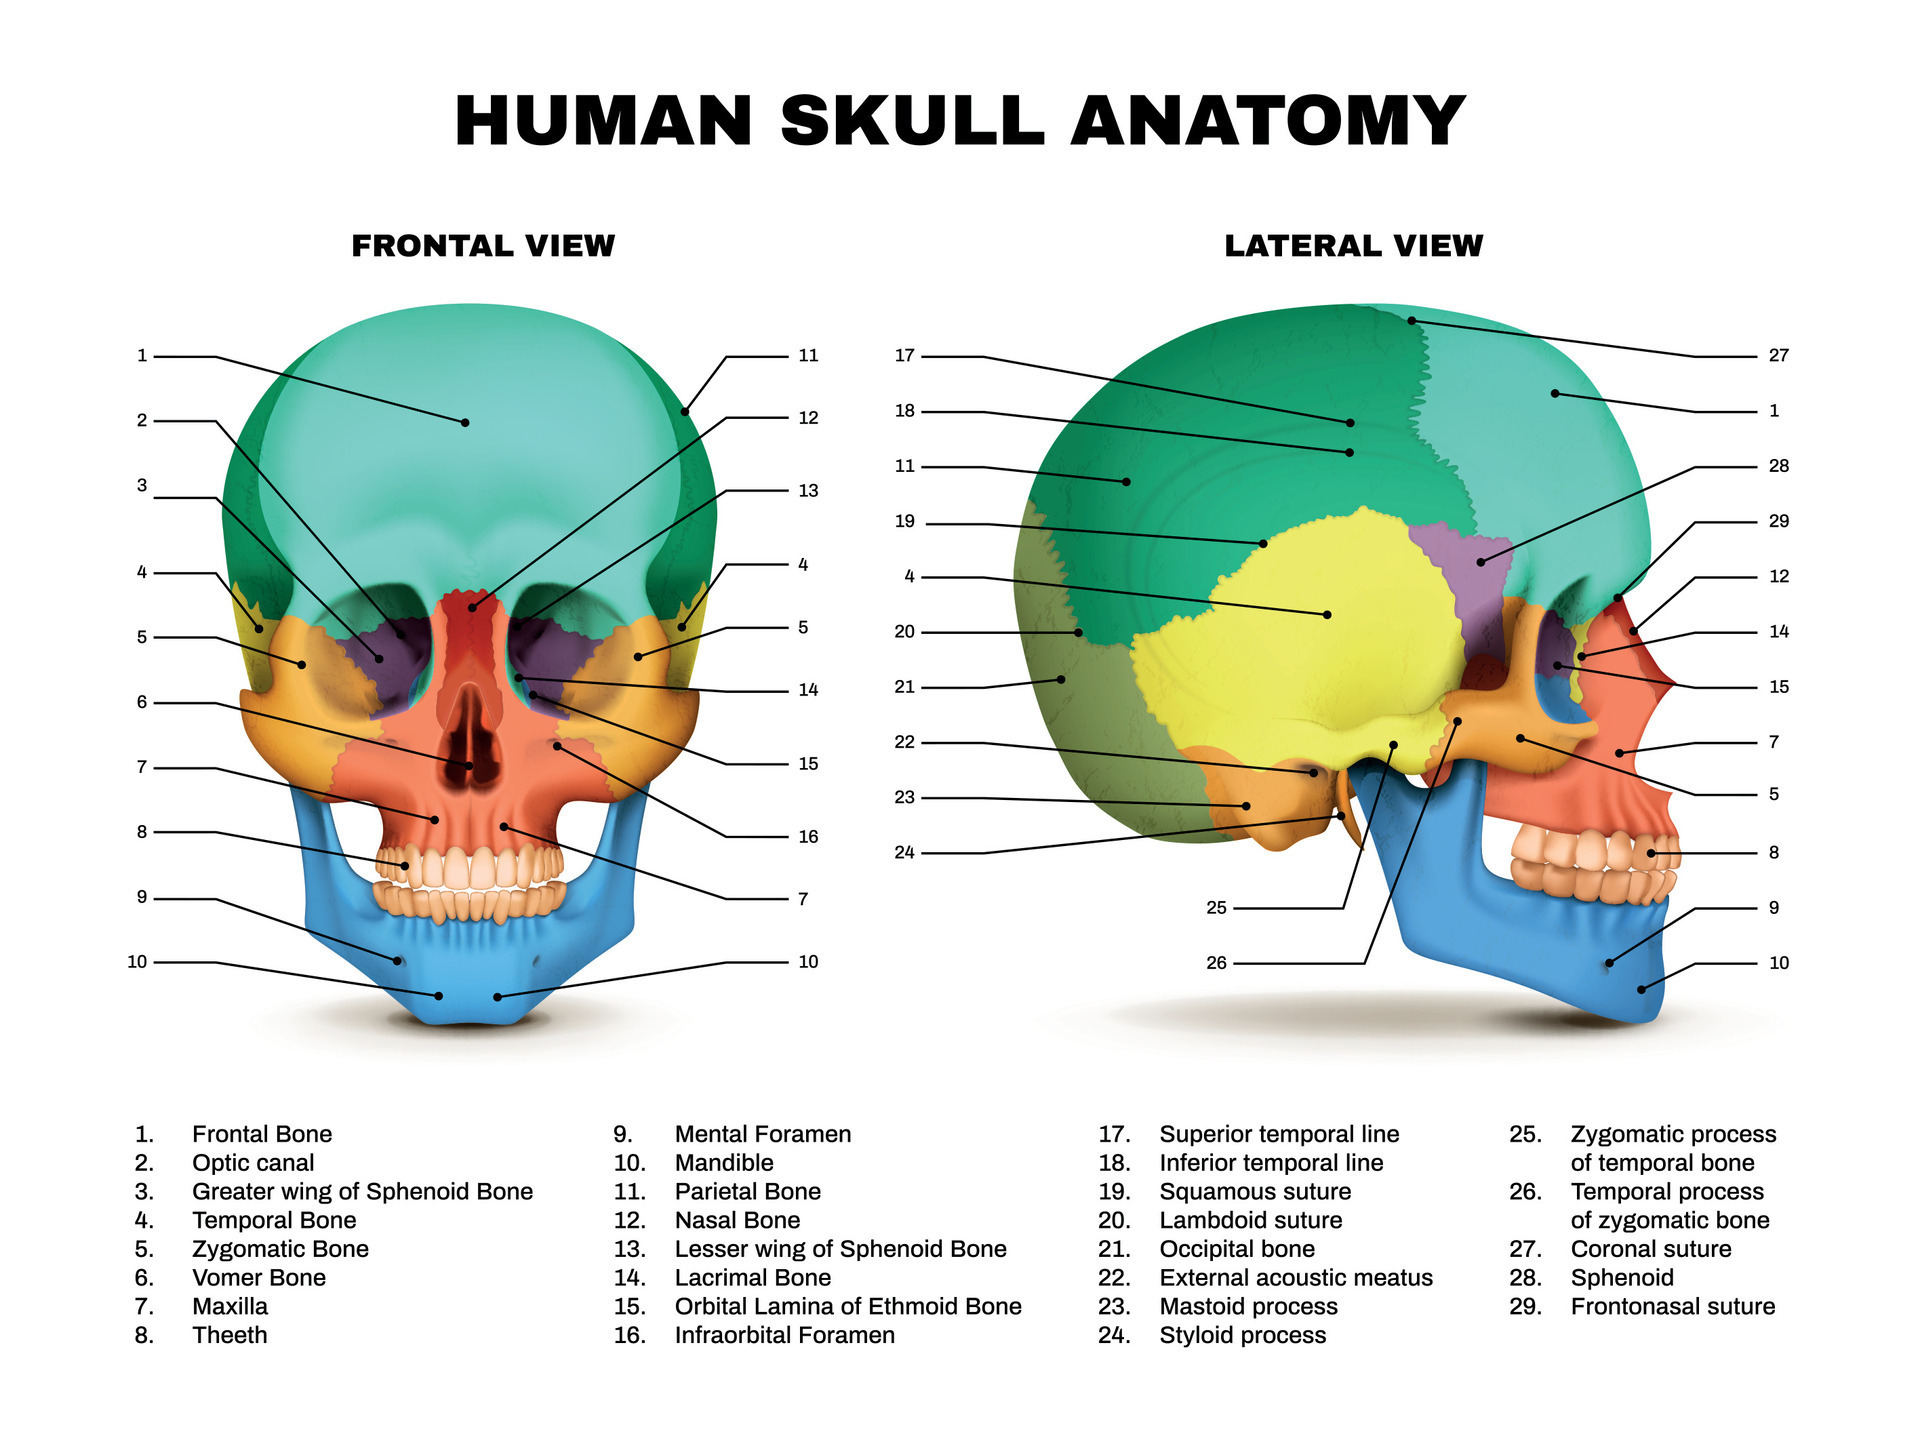 https://static.vecteezy.com/ti/vecteur-libre/p3/28573006-humain-crane-anatomie-infographie-vectoriel.jpg